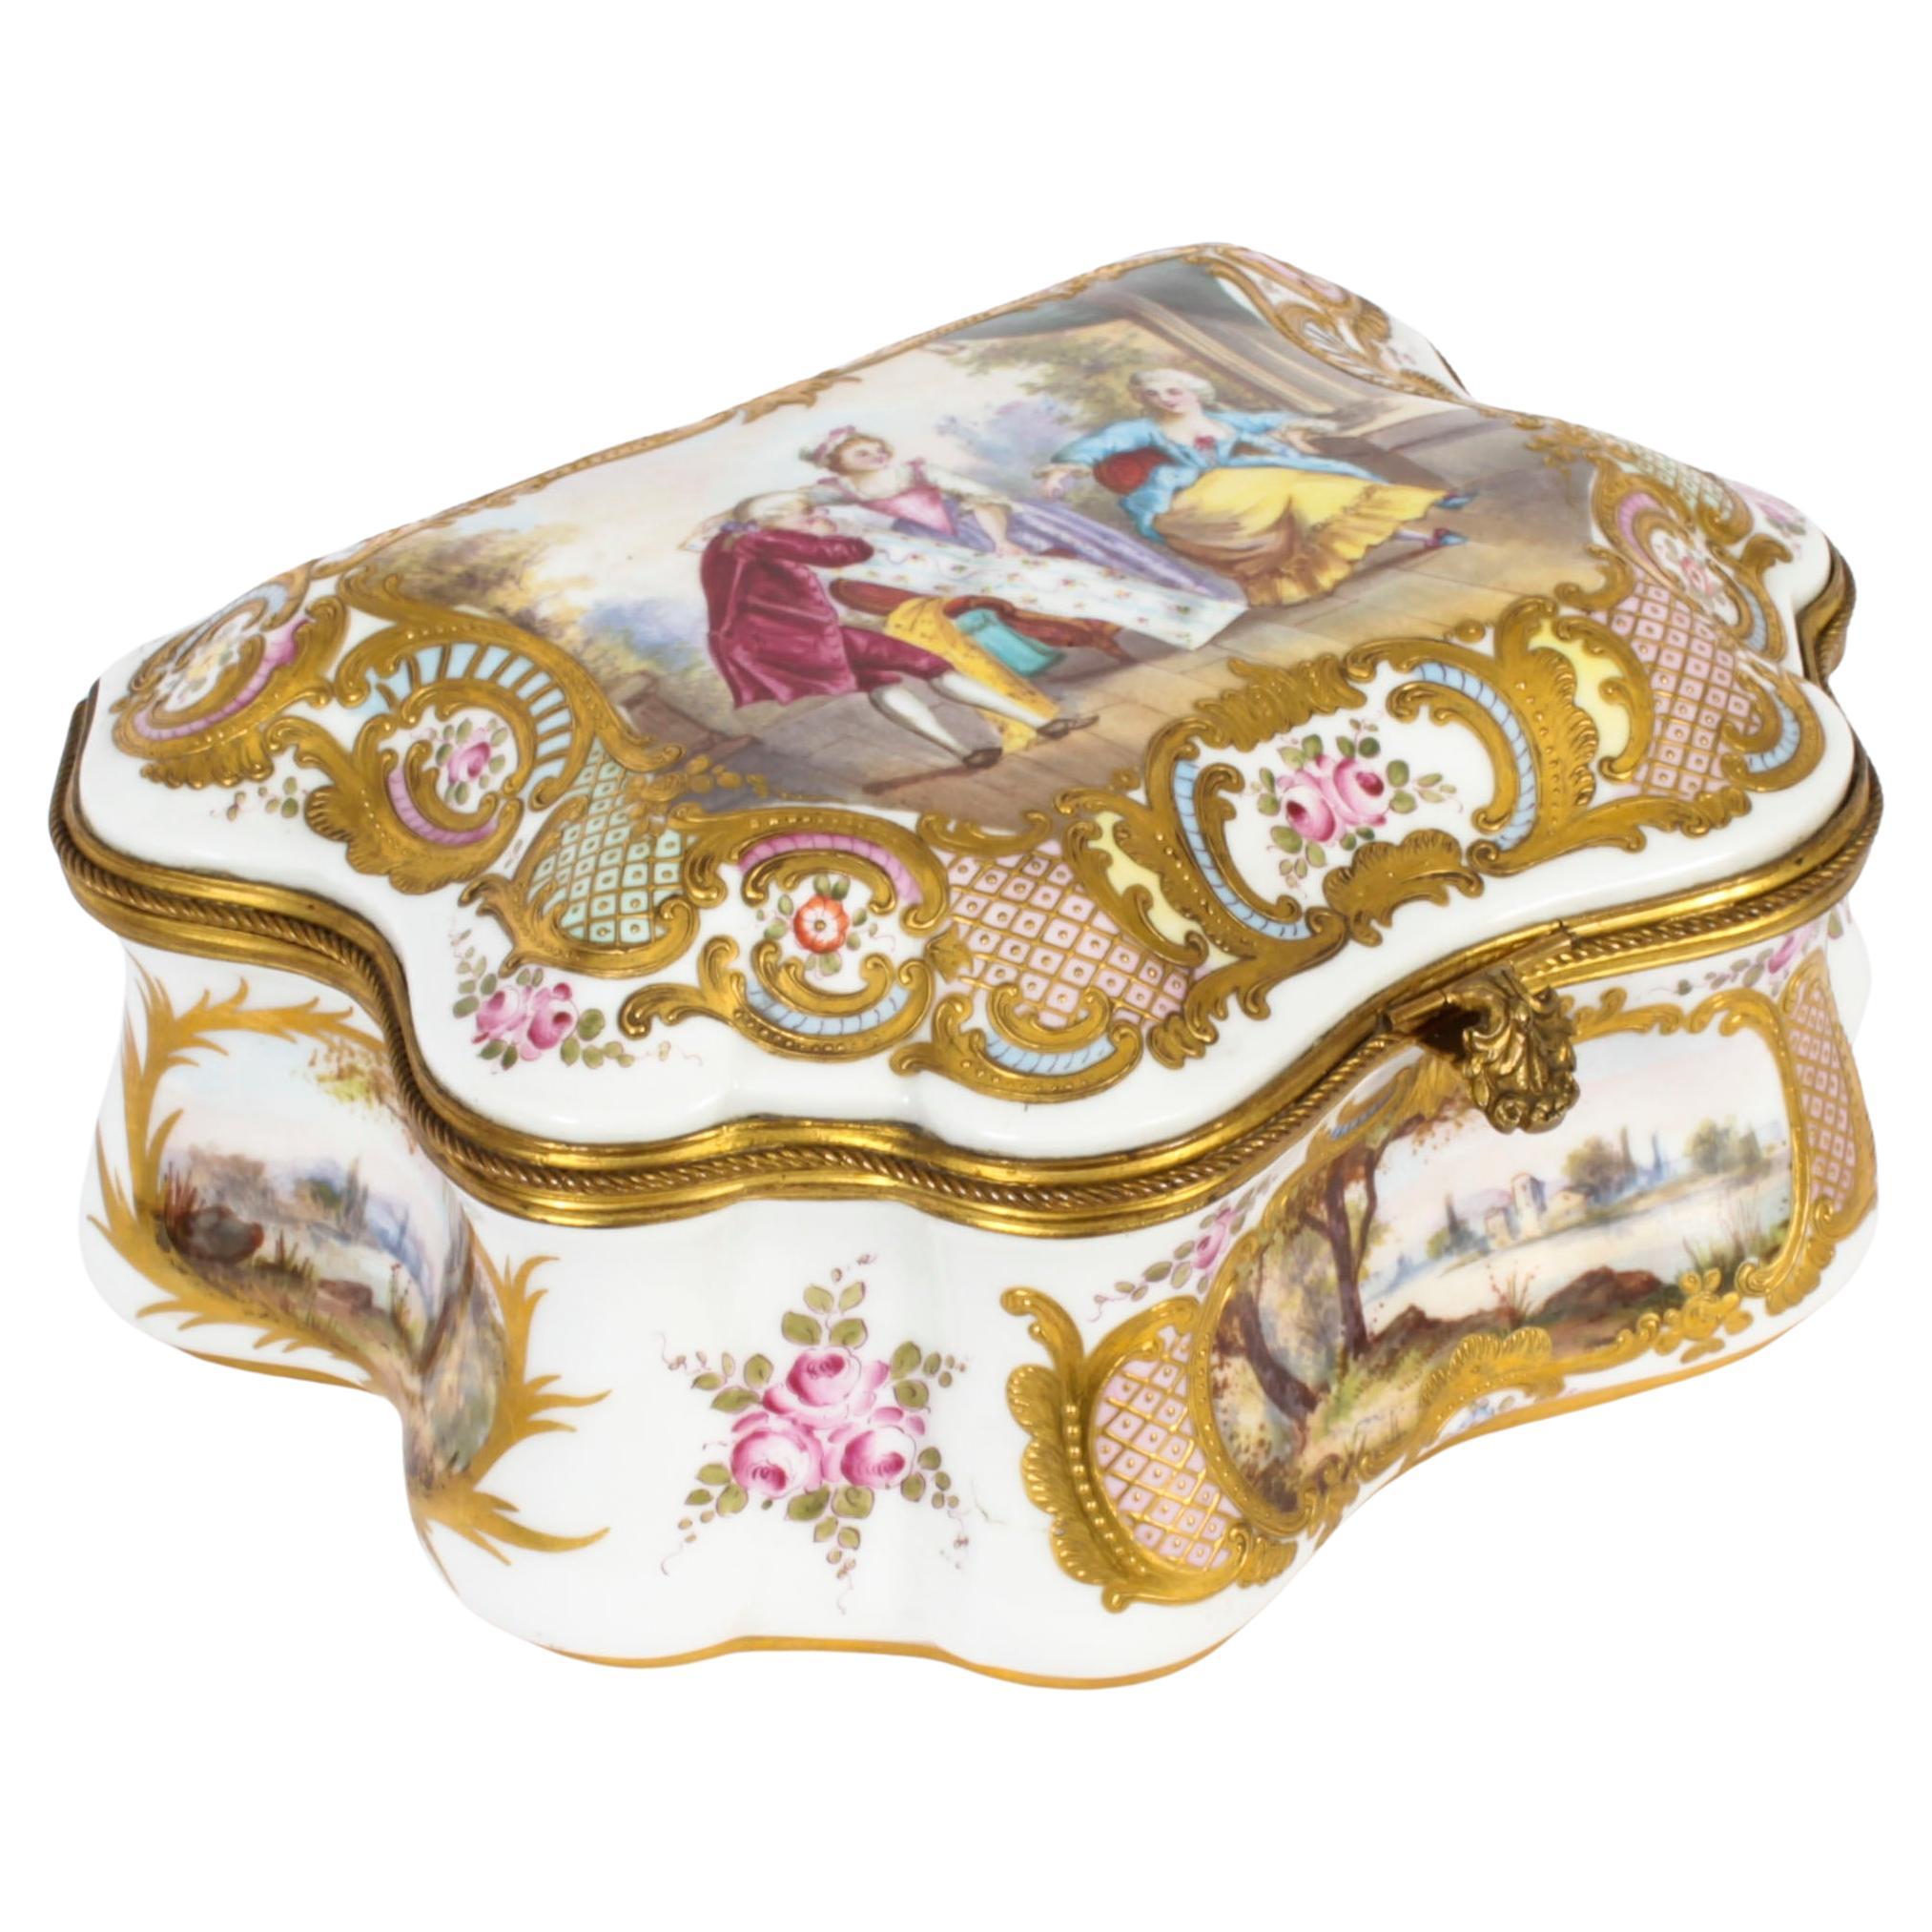 Grand coffret ancien en porcelaine de Sèvres 19ème siècle